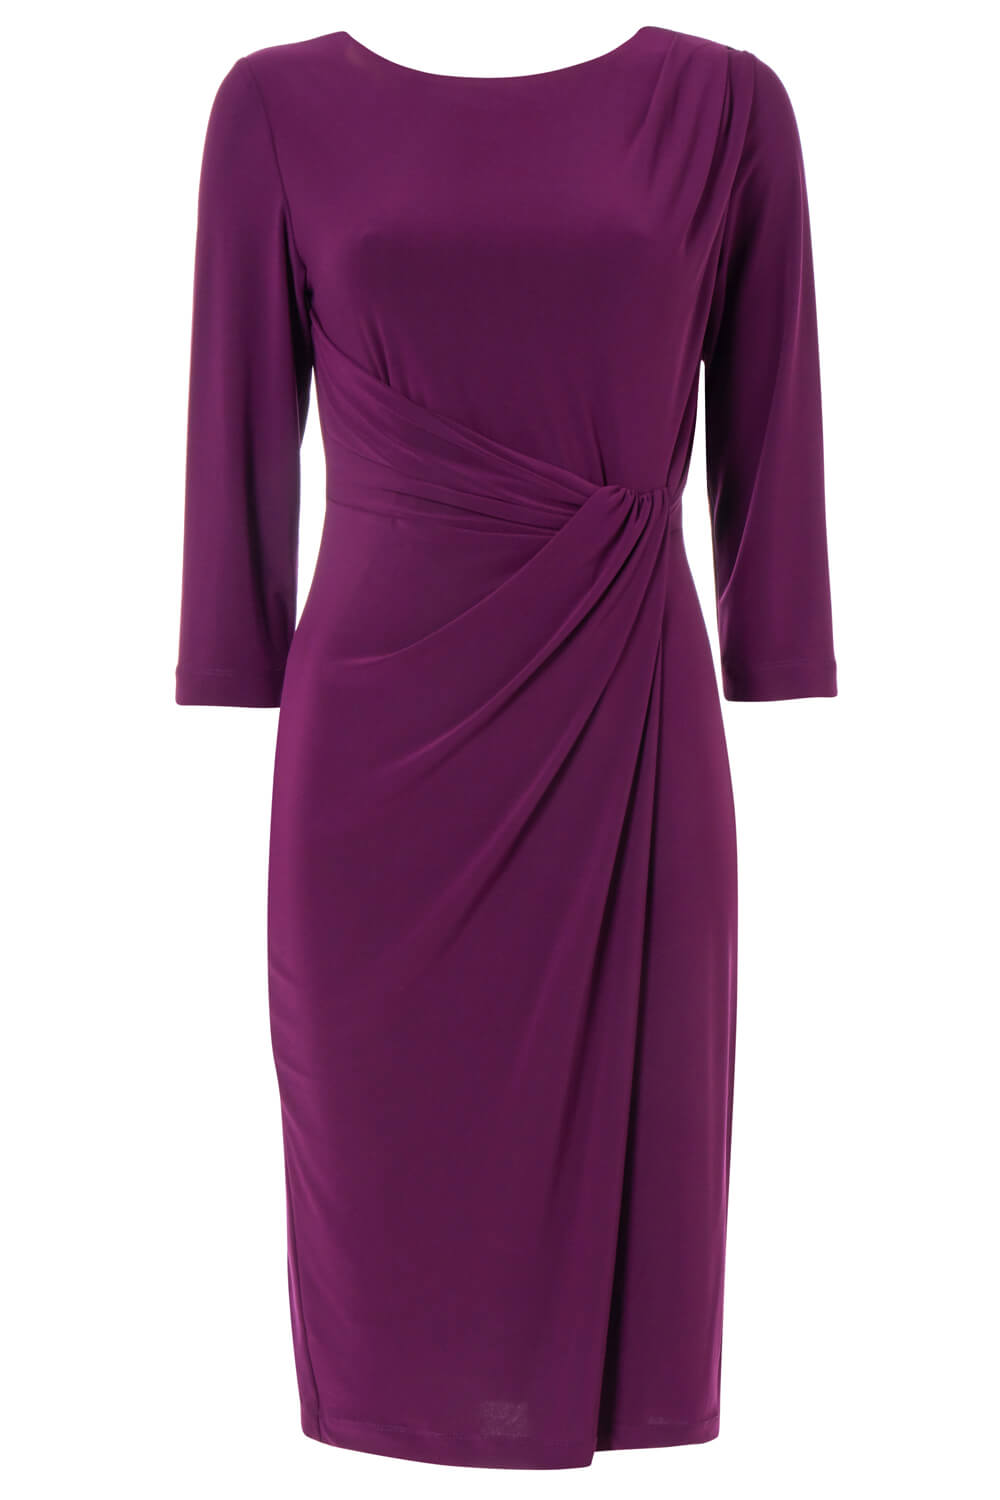 Purple 3/4 Sleeve Twist Waist Dress, Image 5 of 5